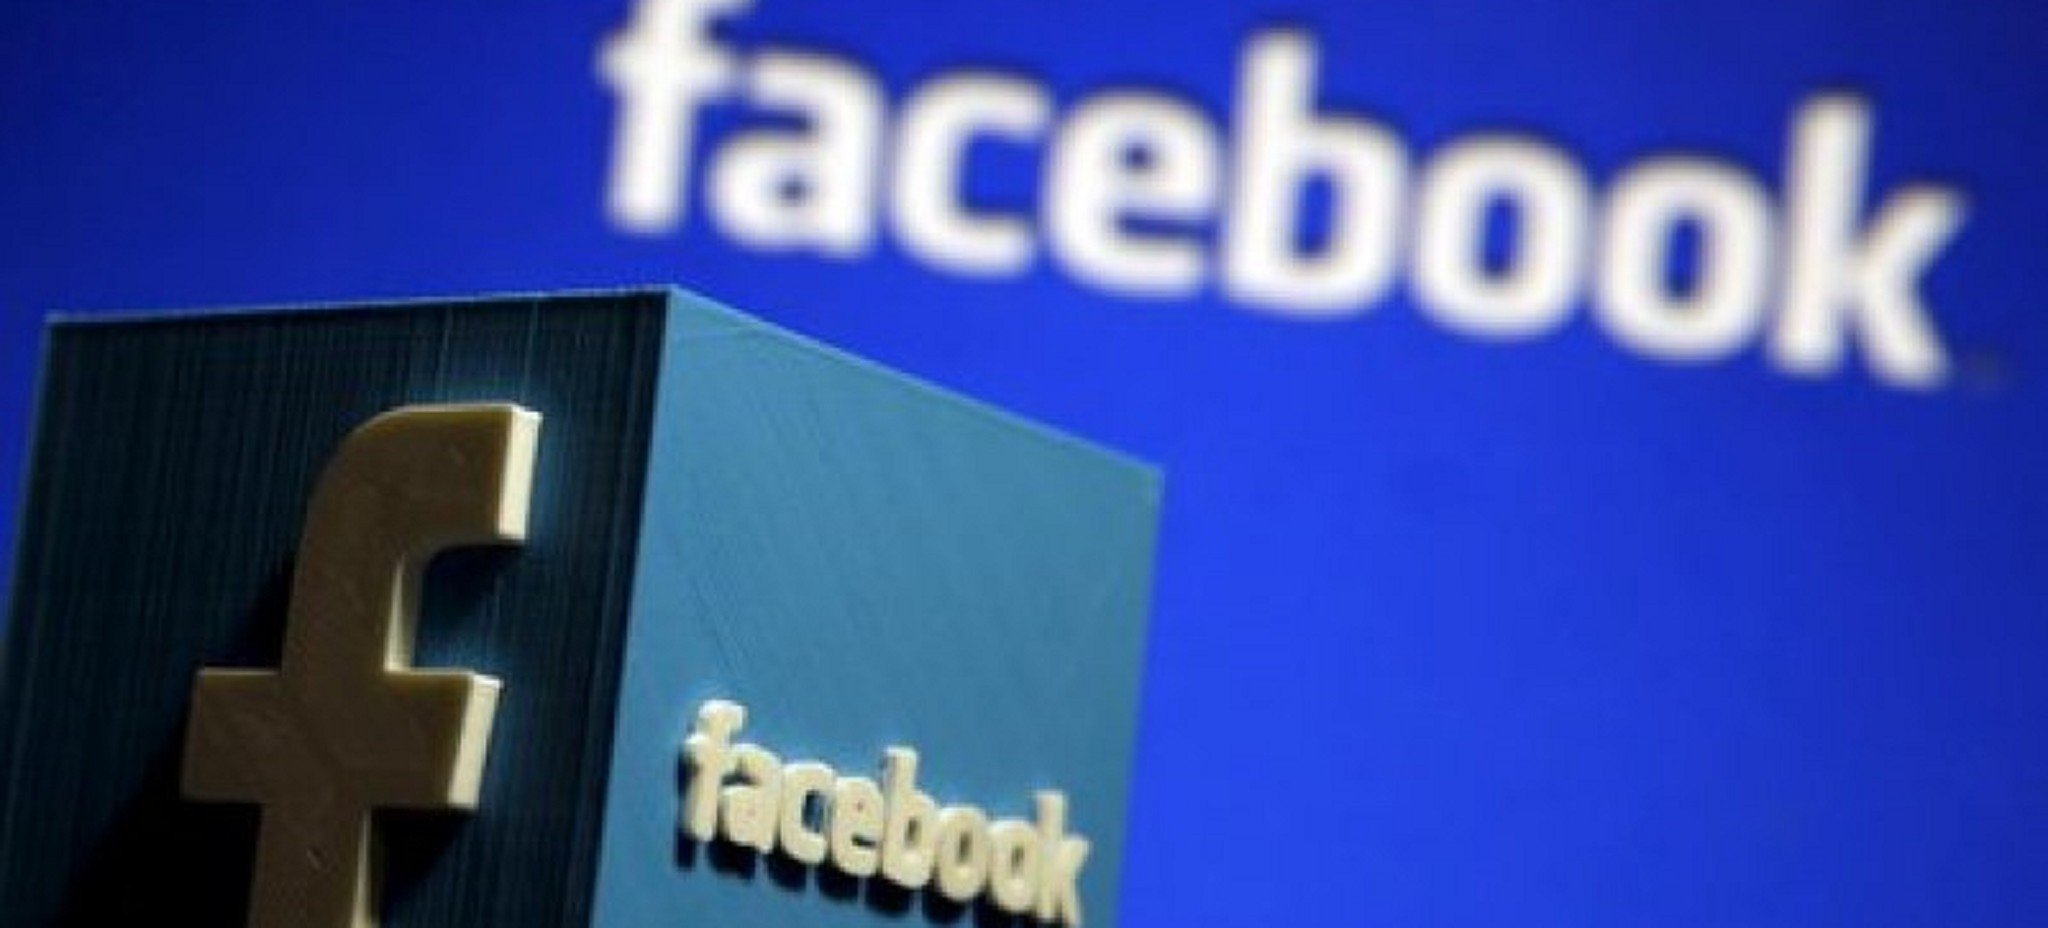 叫它「臉書帝國」，今年首季海外廣告營收比例已破51%